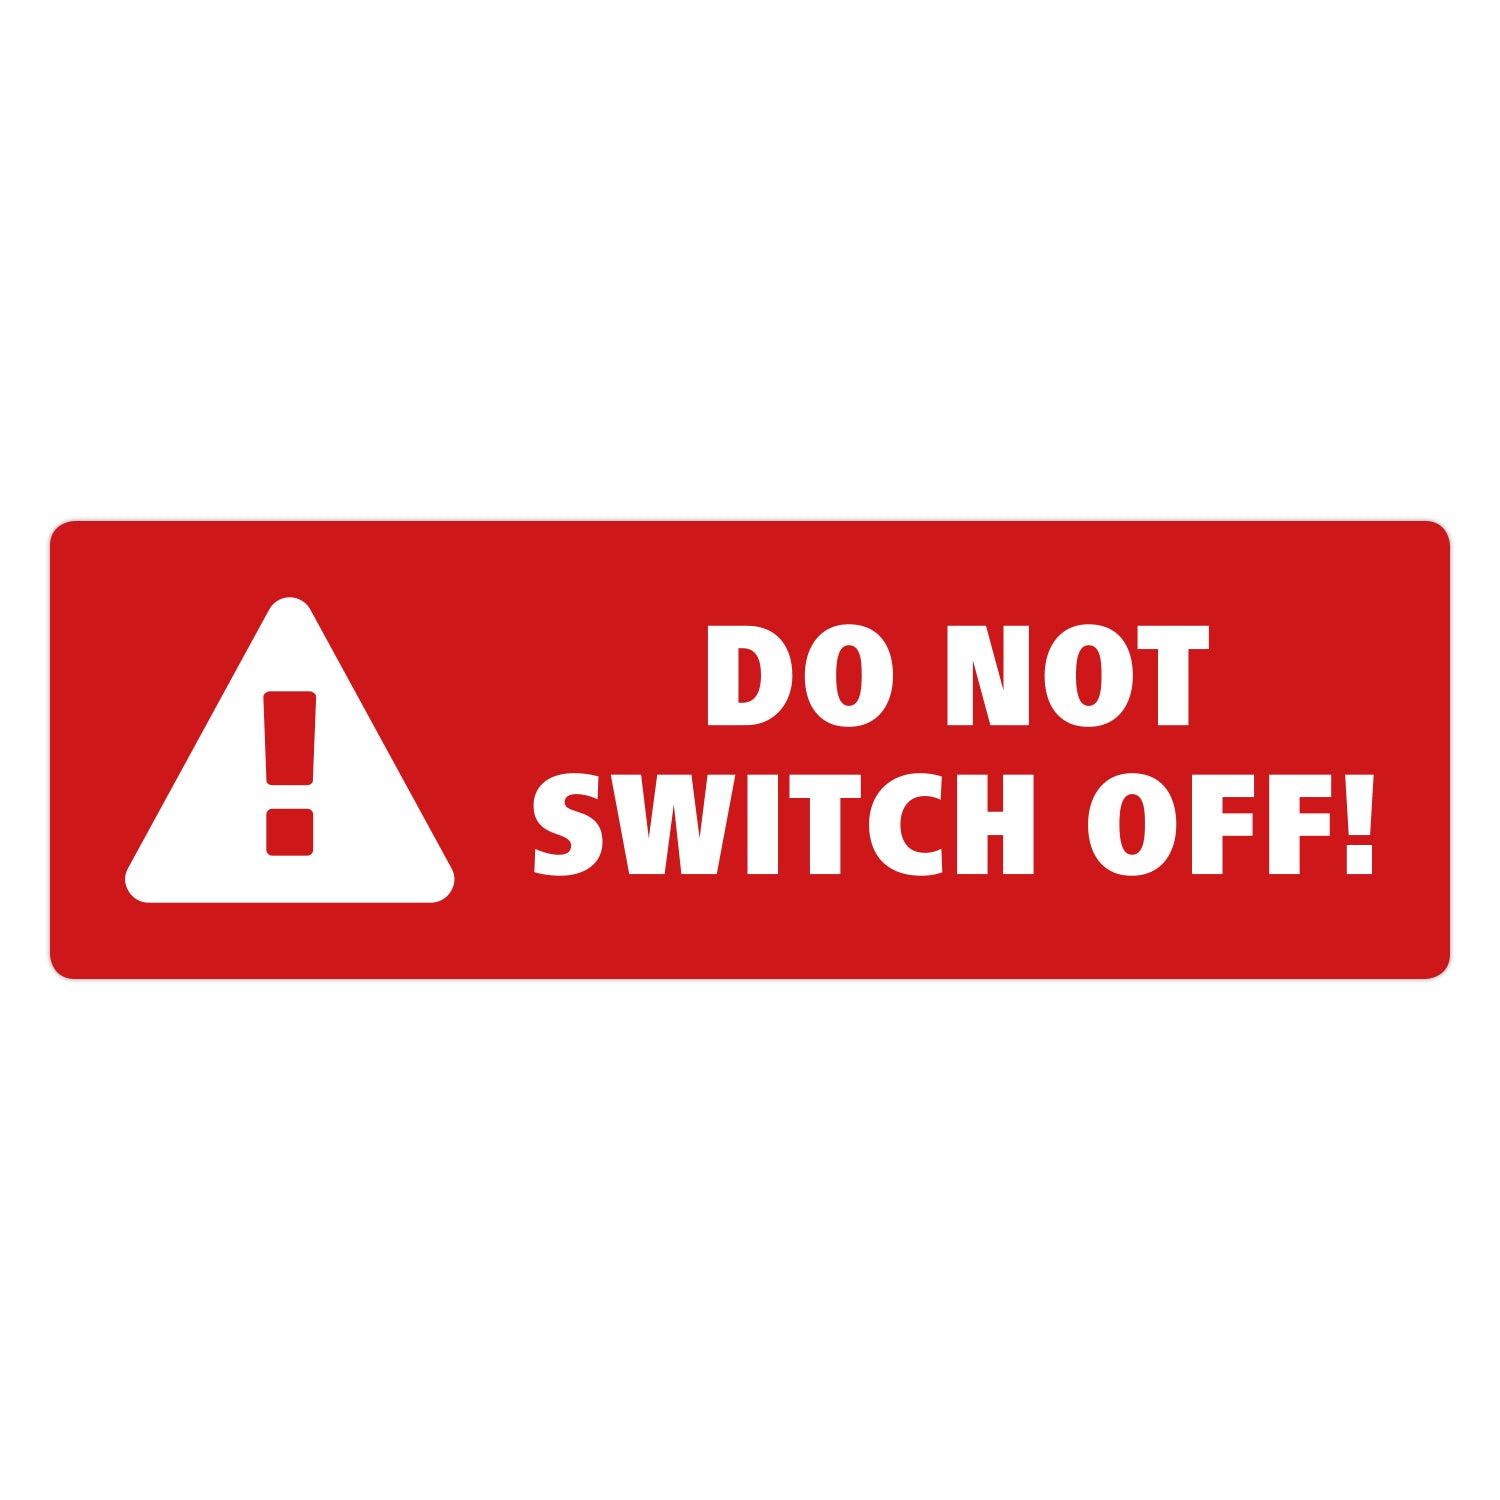 Do Not Switch Off Sticker by Gobrecht & Ulrich